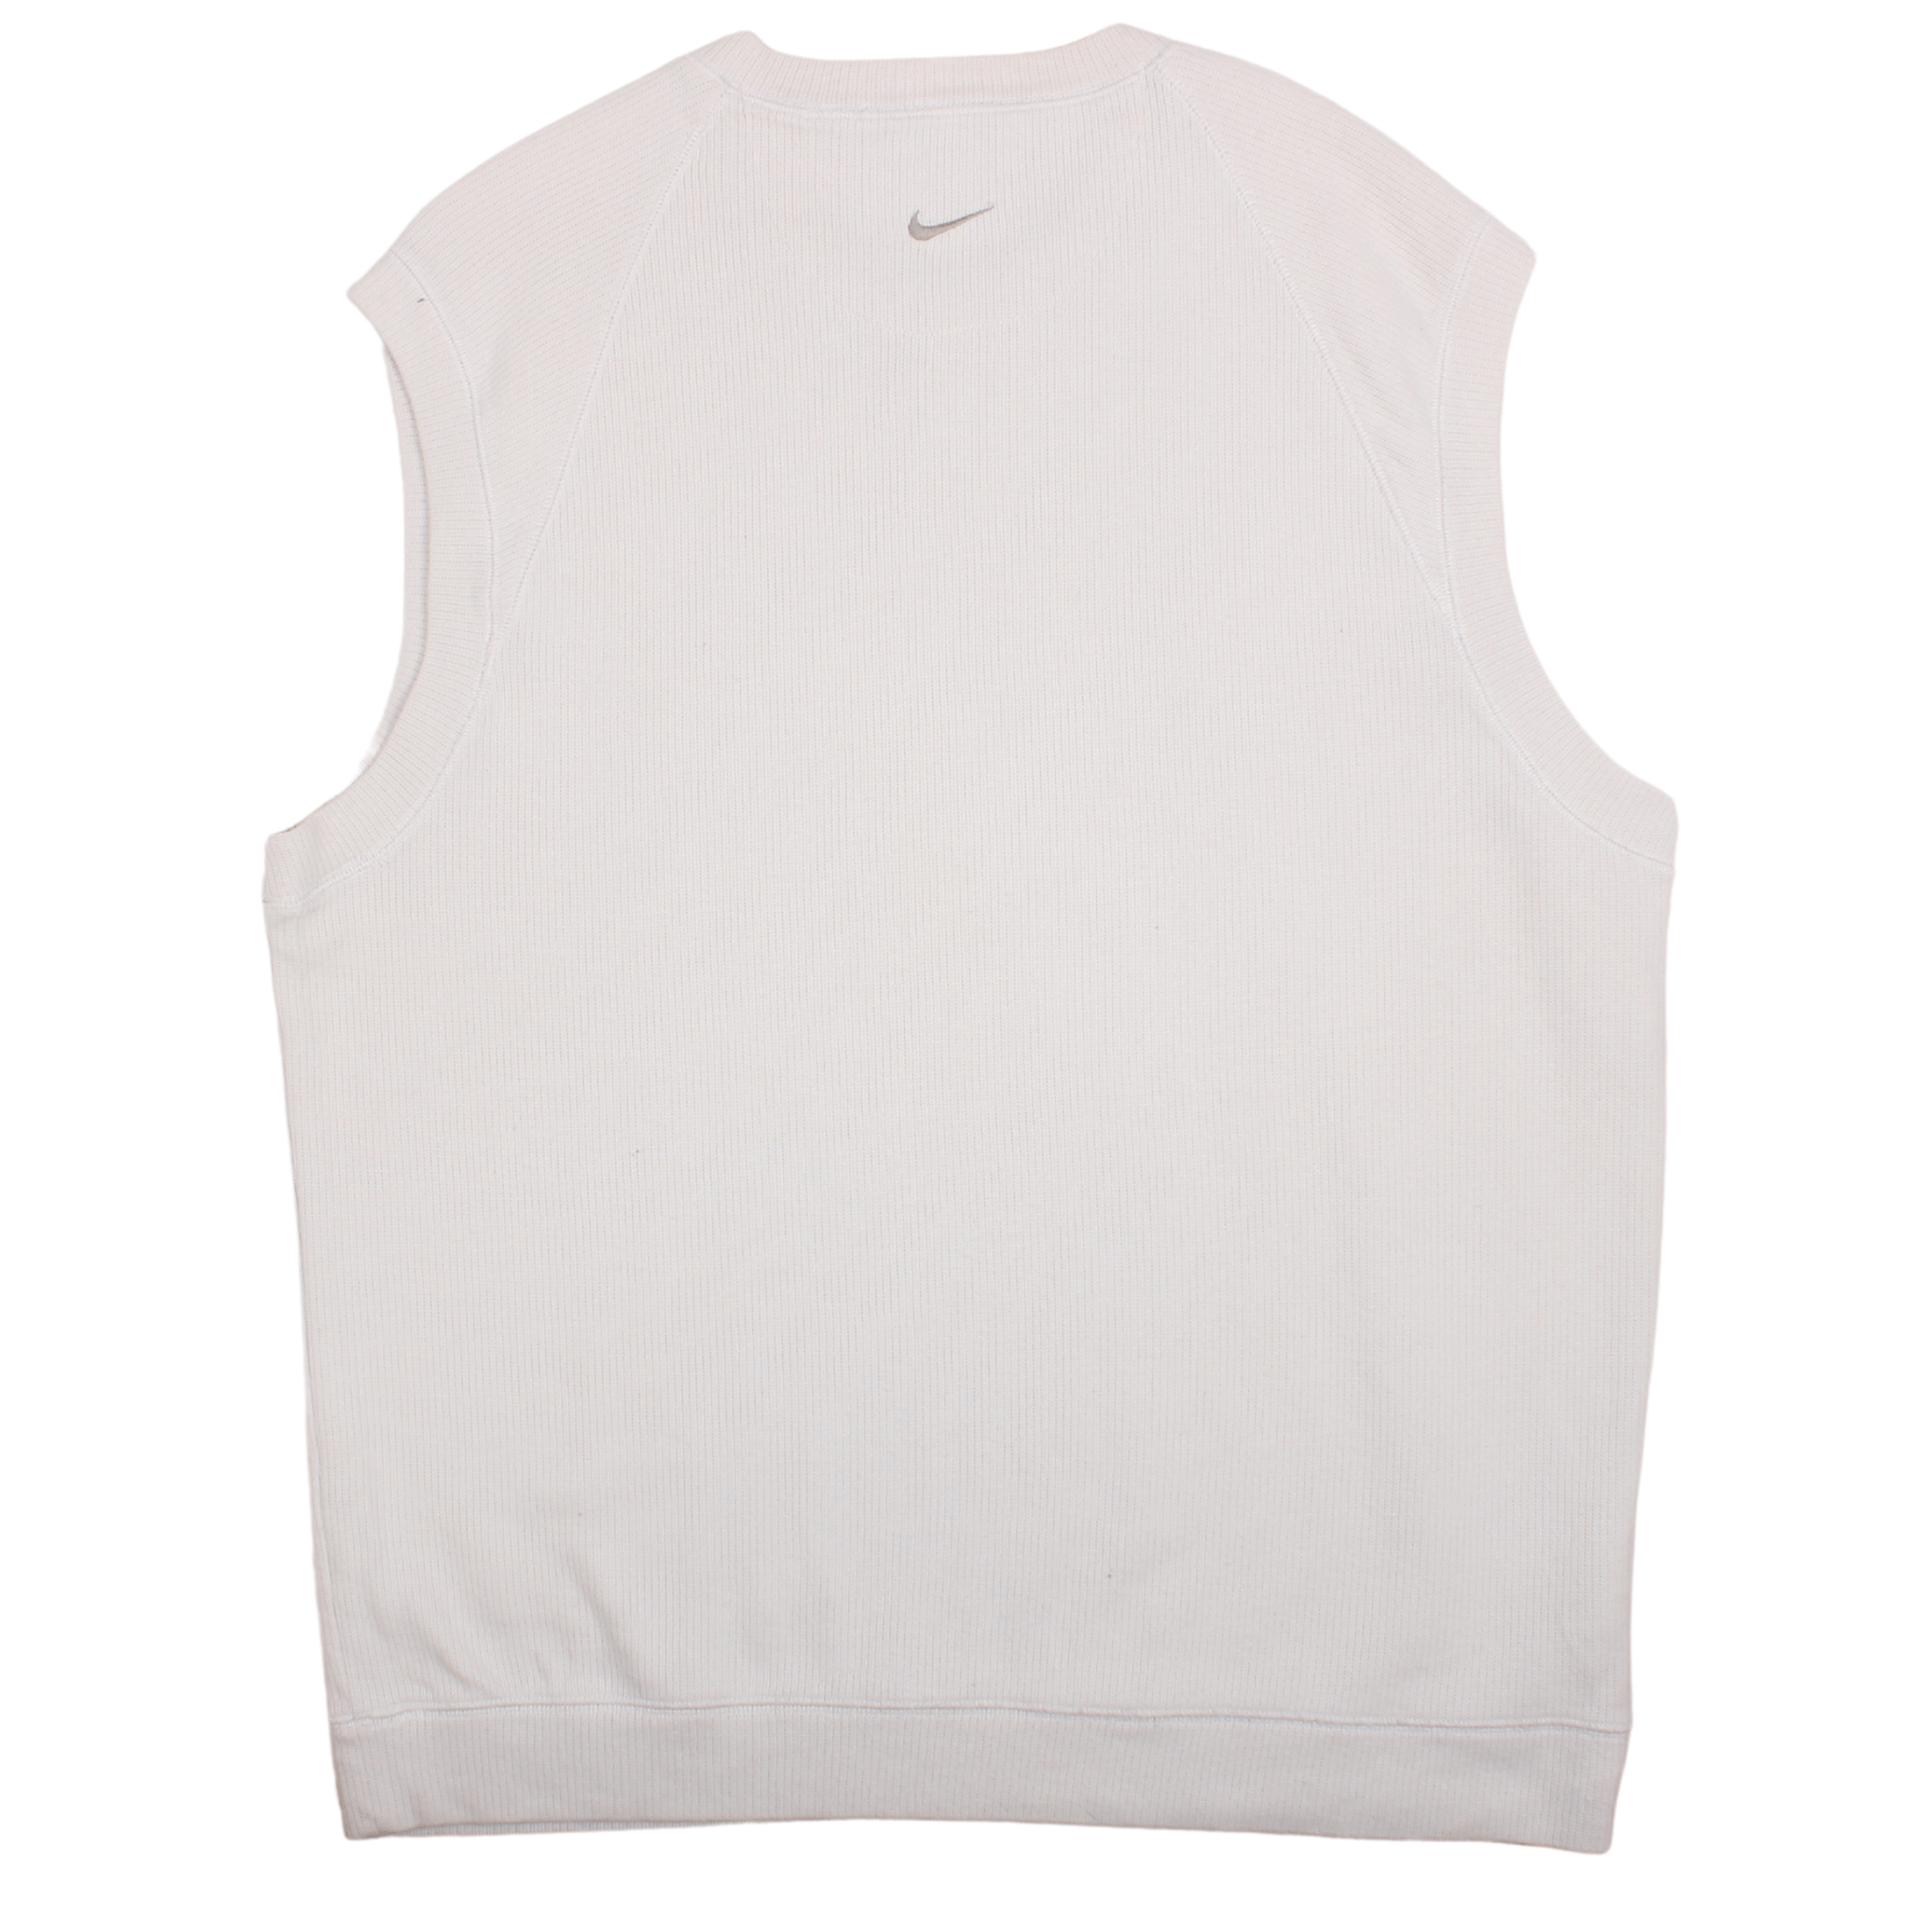 Vintage Nike Sleeveless Sweatshirt (M)